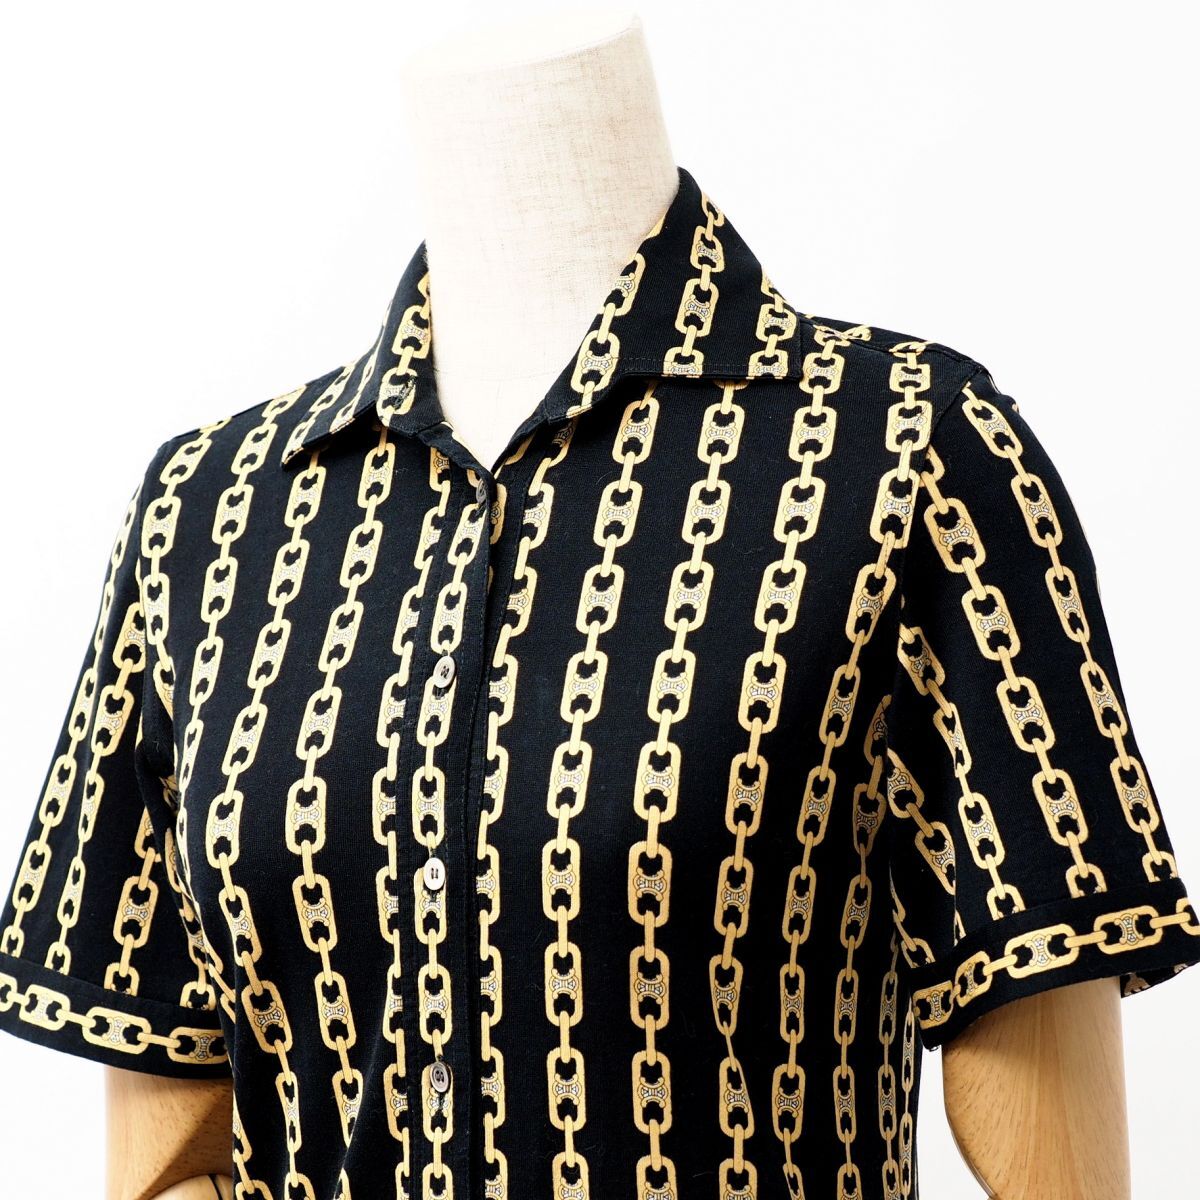 MF7984* Италия производства Celine CELINE Vintage рубашка tops хлопок cut and sewn ткань Macadam рисунок цепь рисунок чёрный × желтый цвет серия размер 36